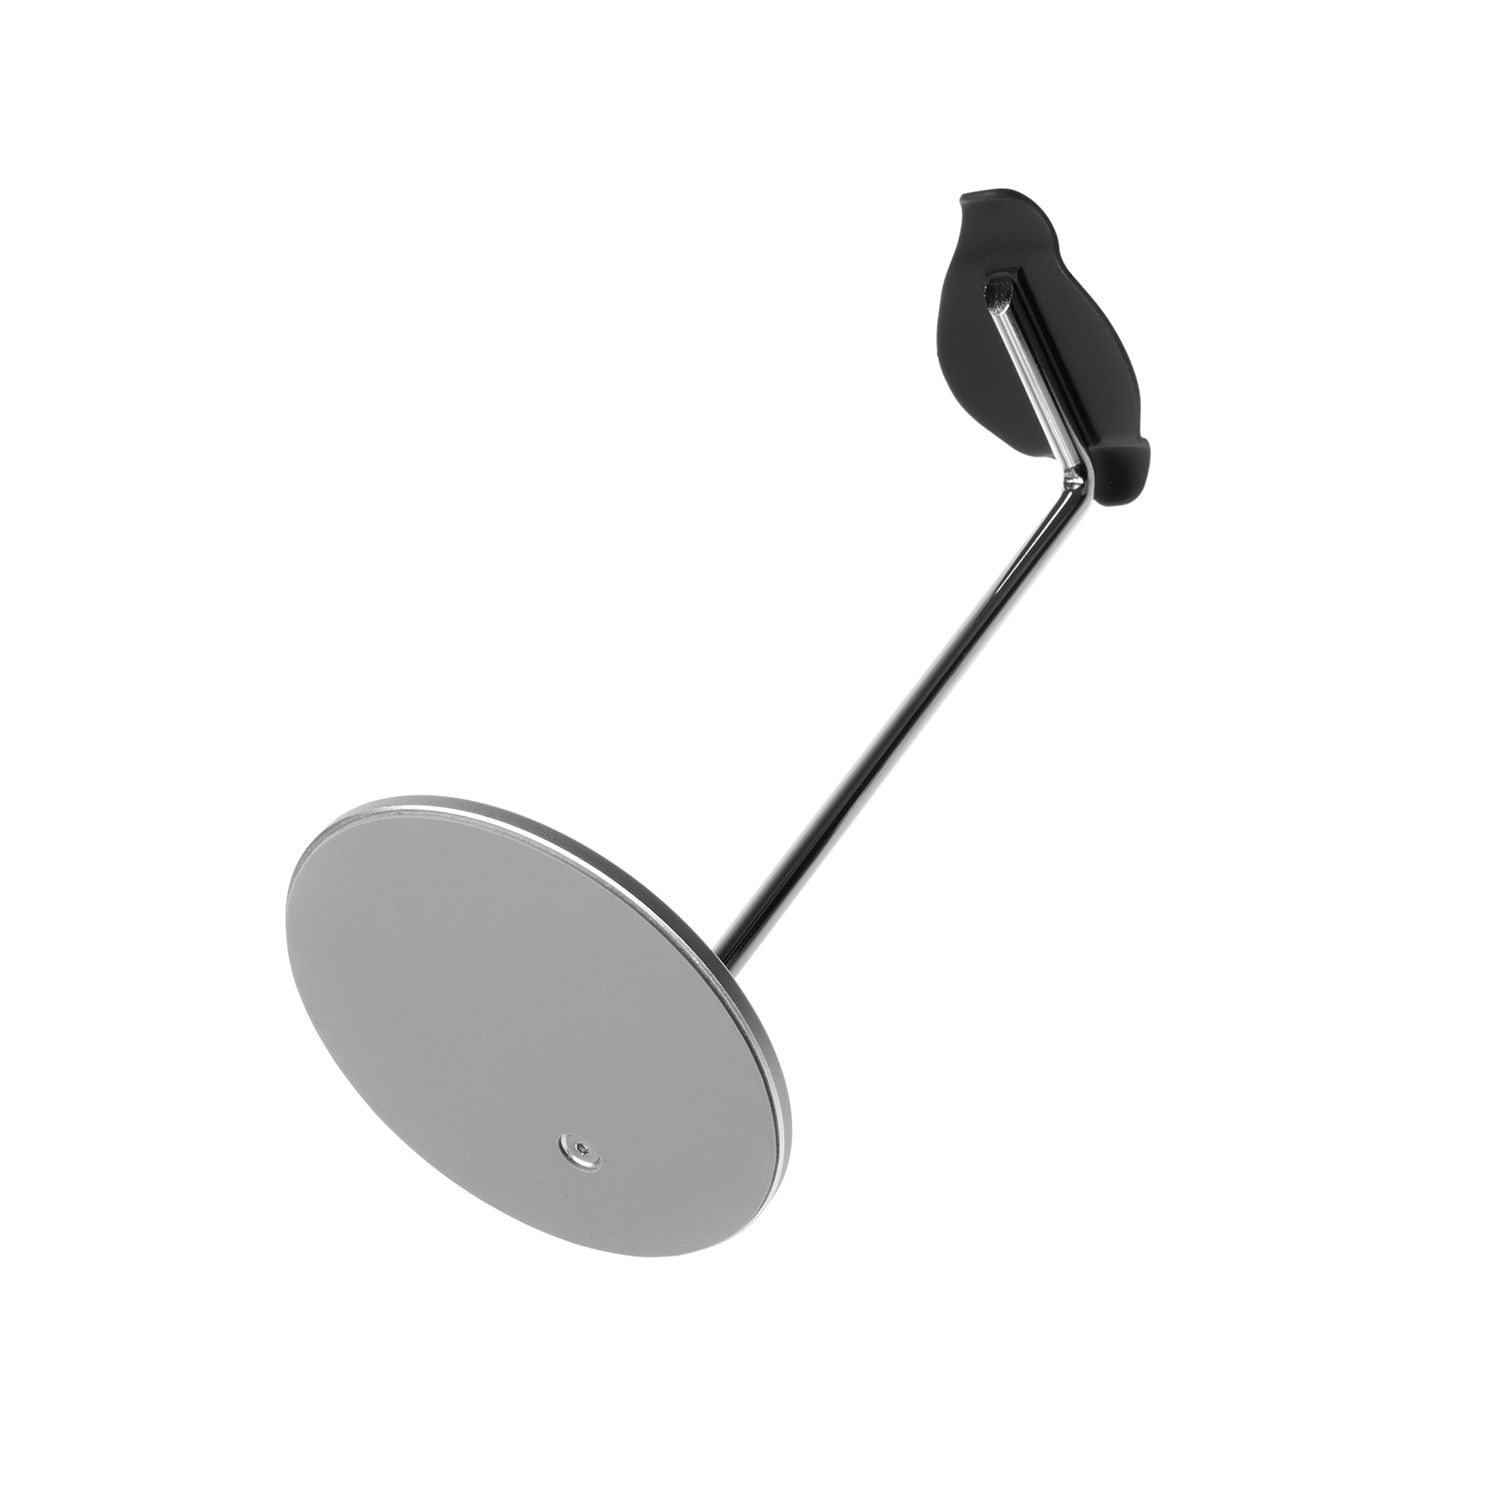 Hliníkový stojánek FIXED Frame Headphones na stůl pro náhlavní sluchátka, stříbrná